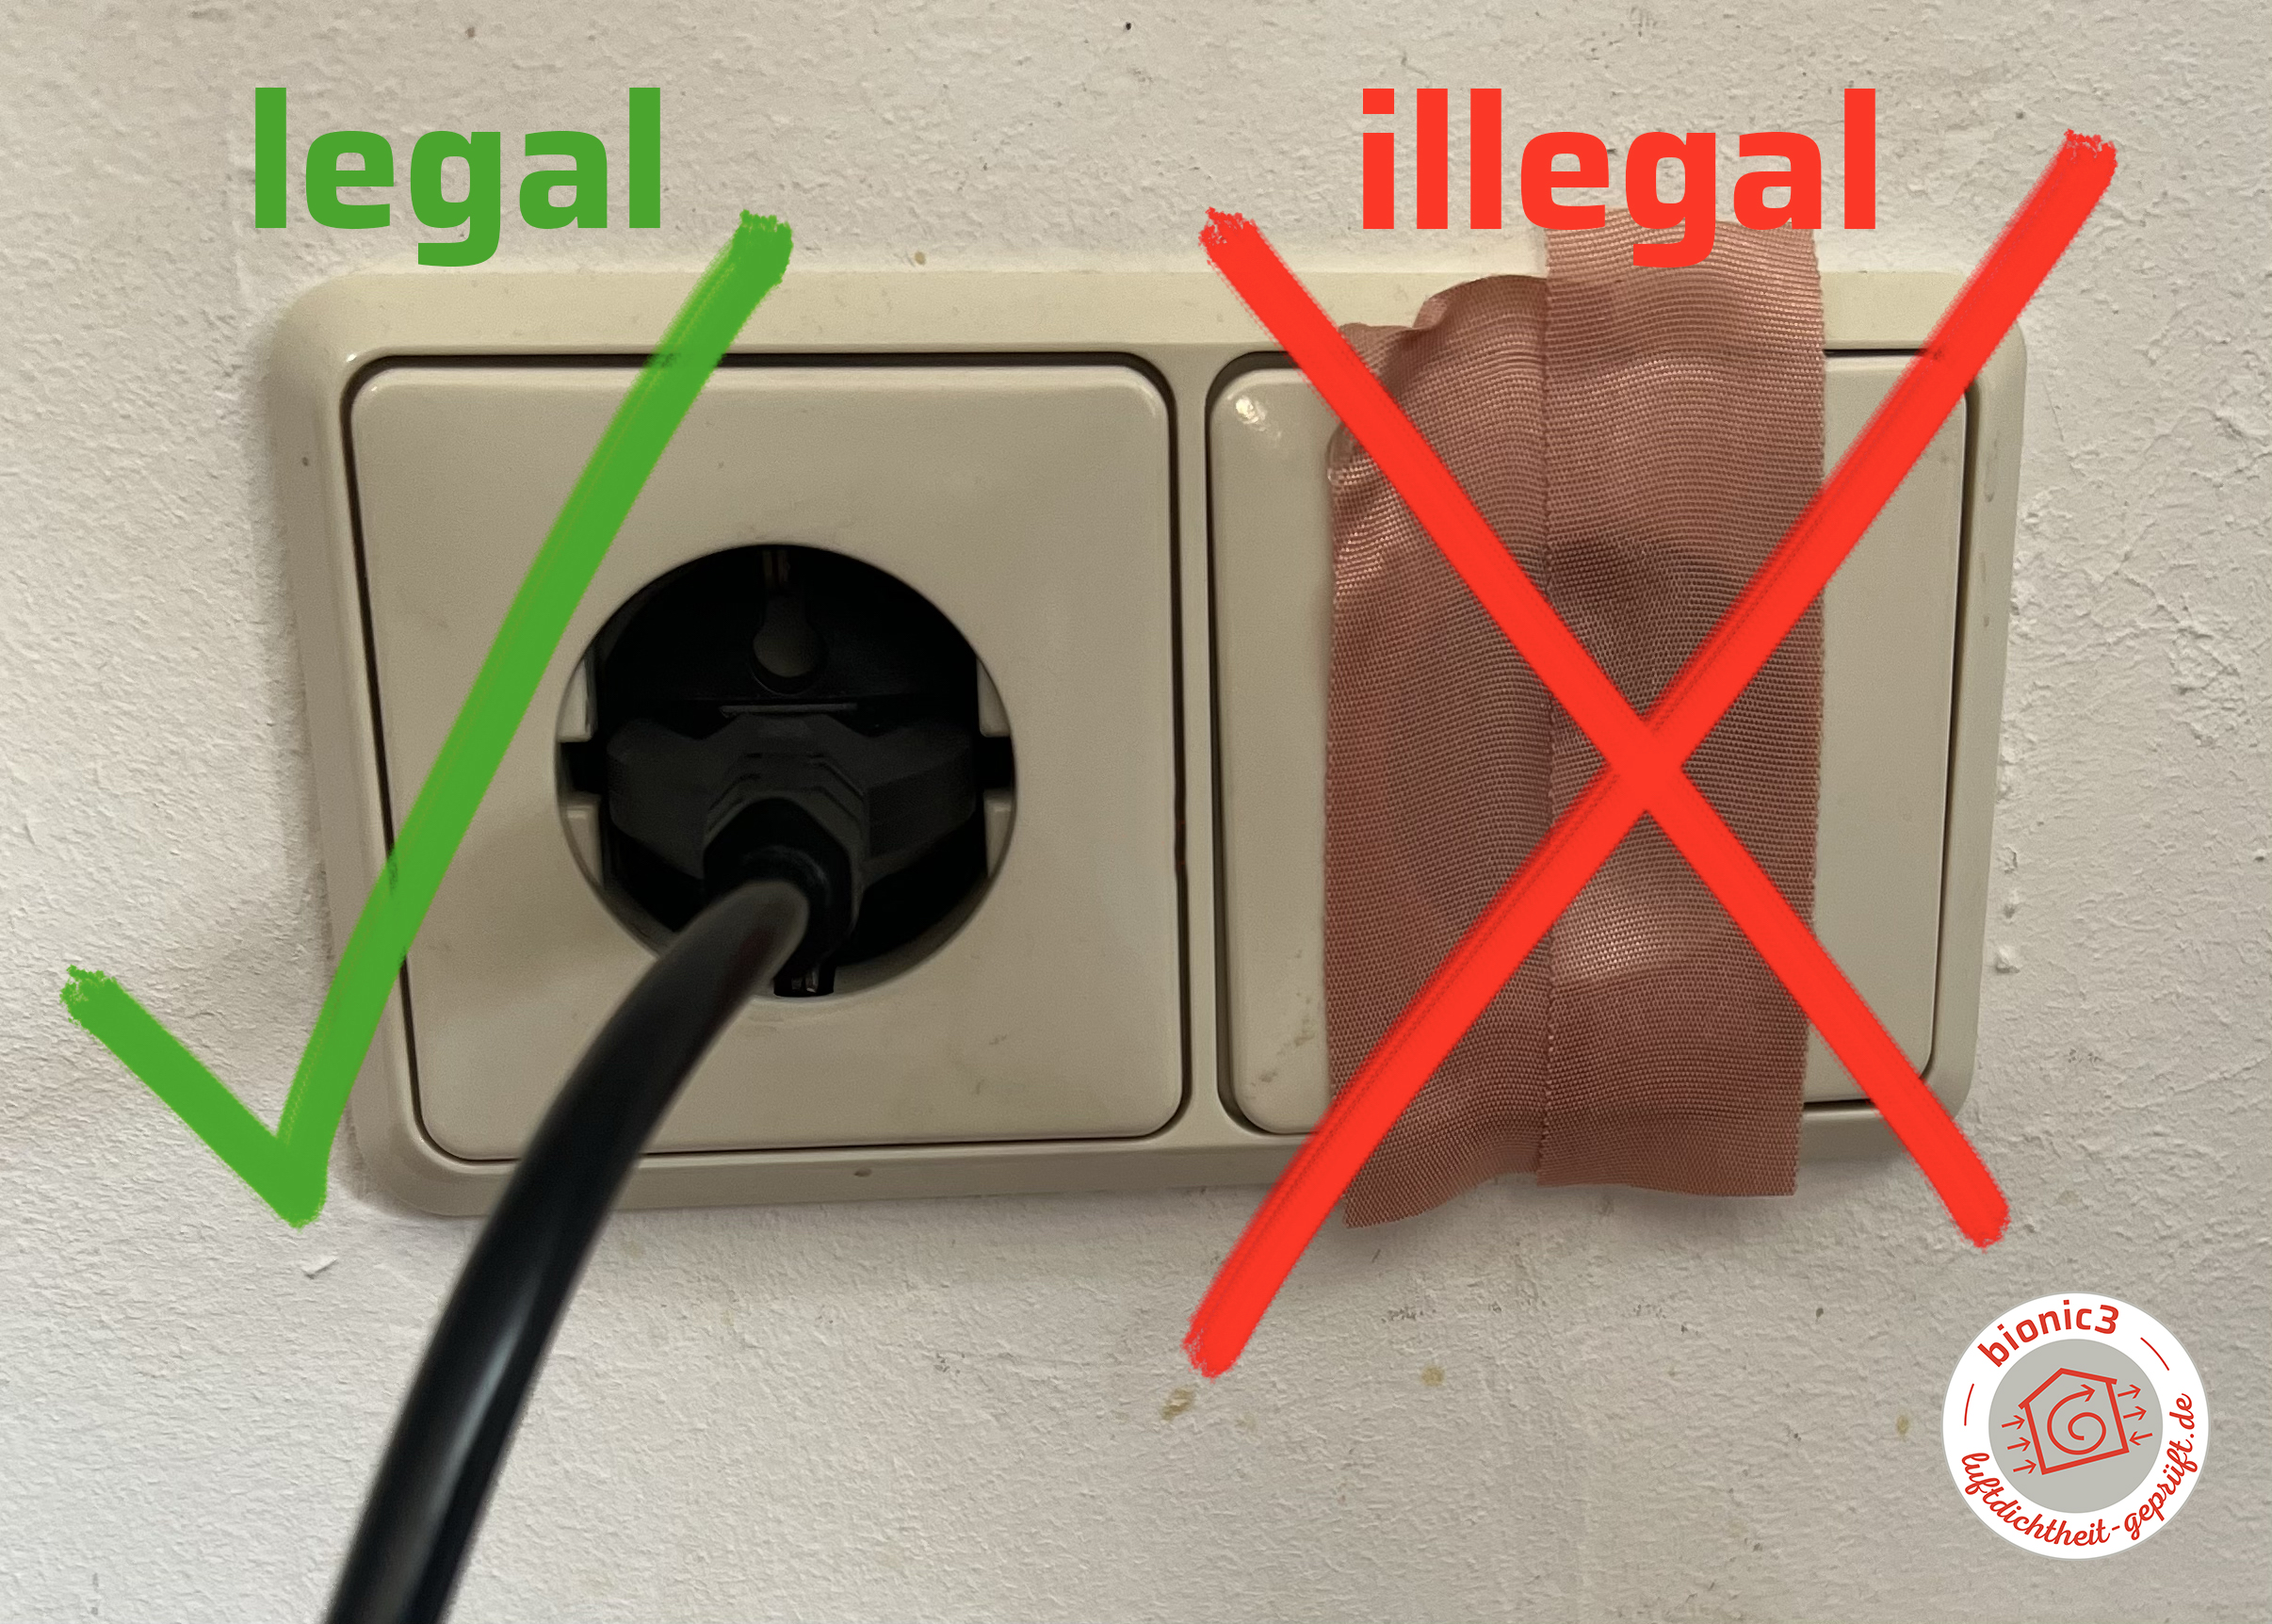 Legal oder Illegal? Beides dichtet ab, aber nun eins ist laut Norm erlaubt.